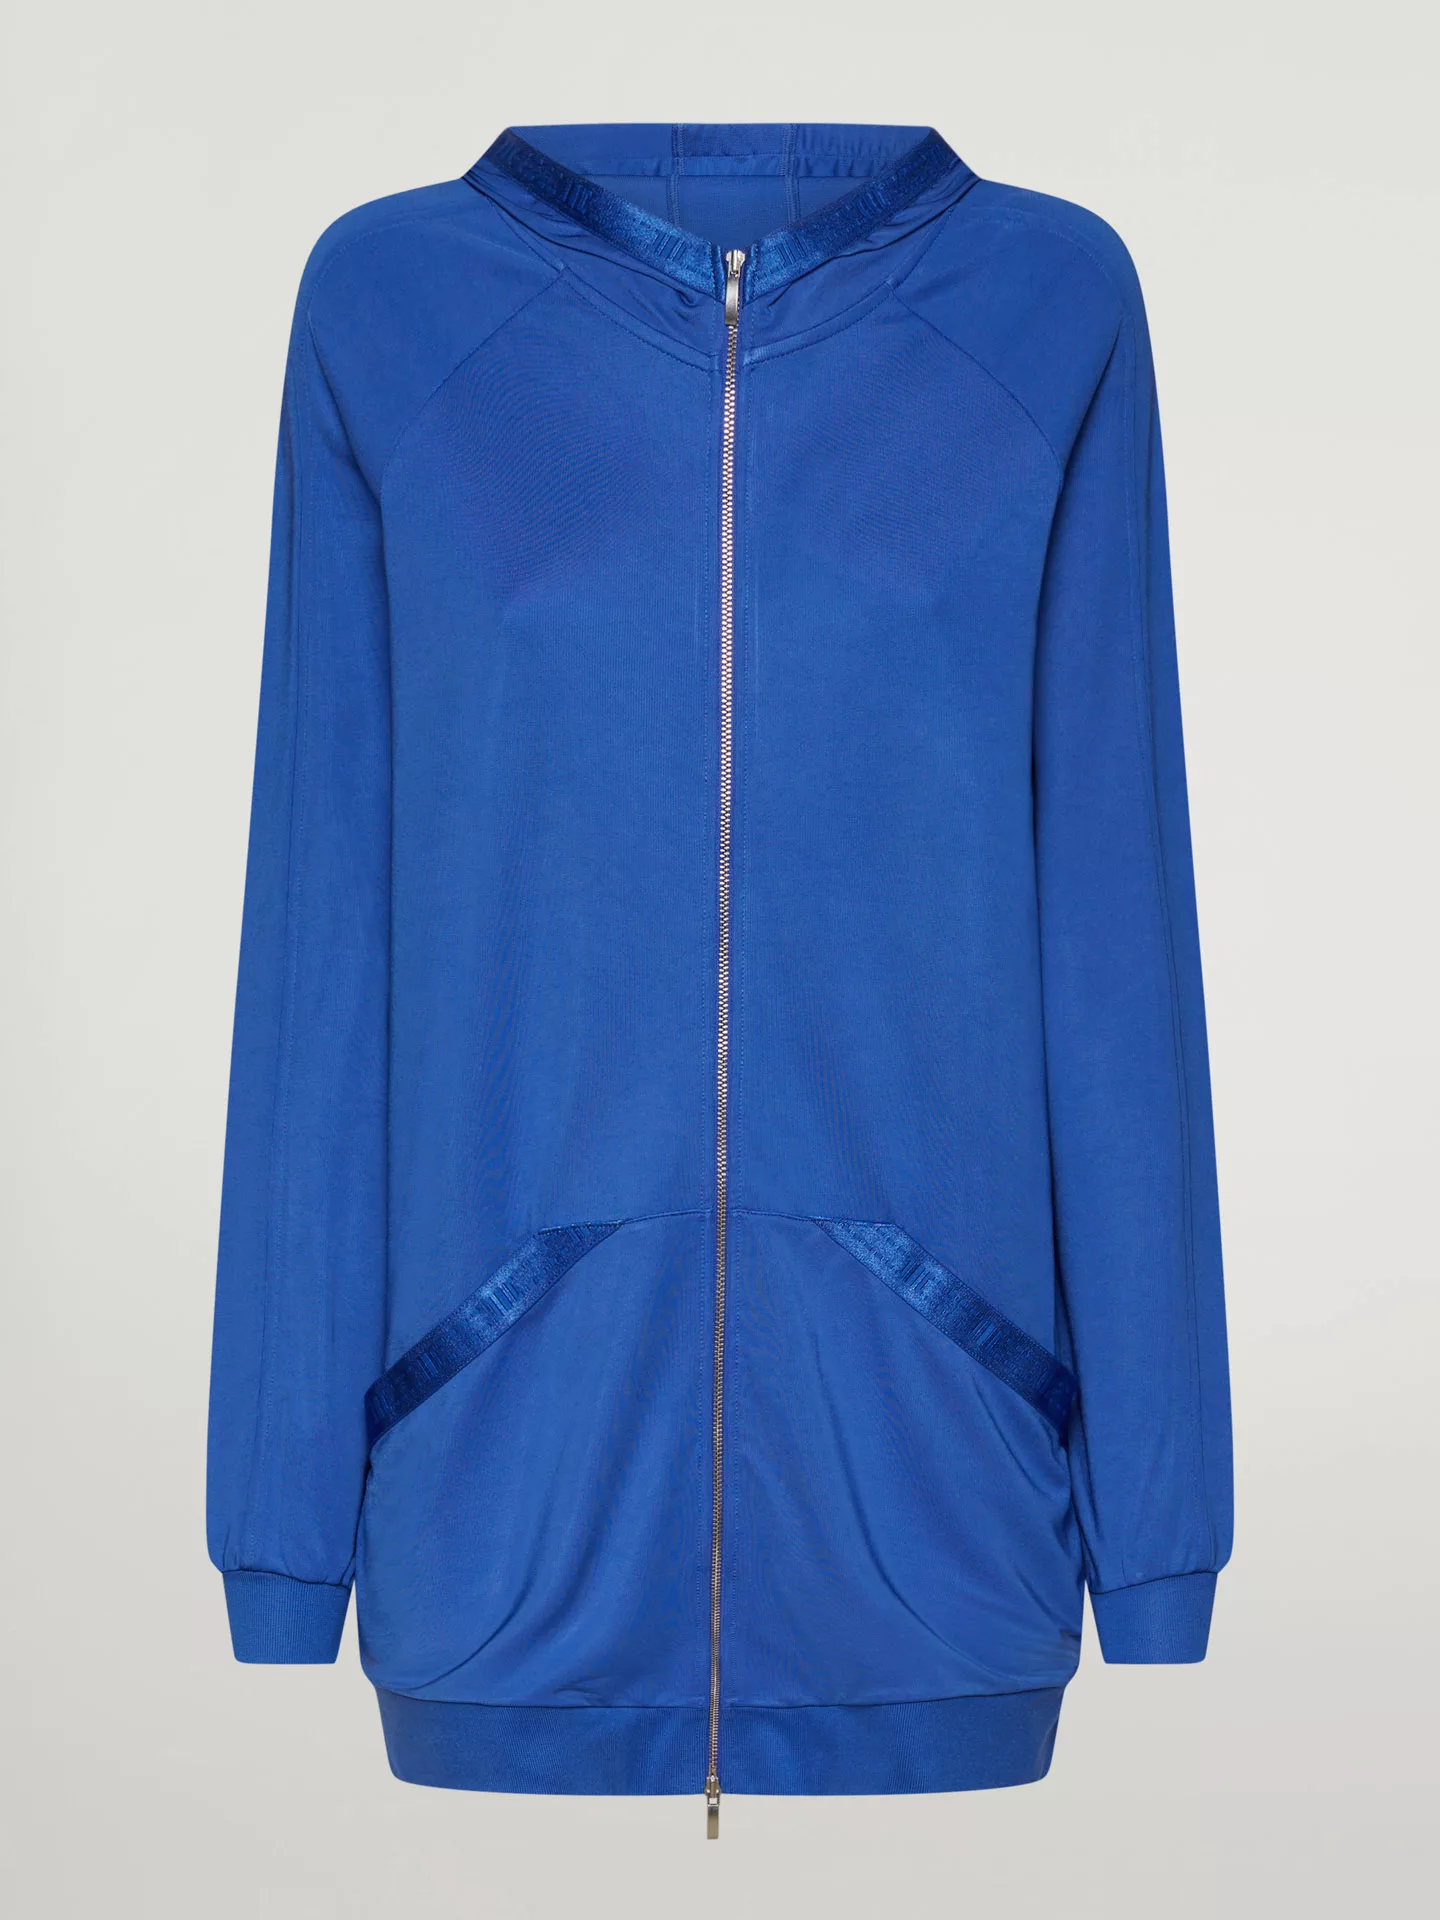 Wolford - Full zip Sweater Jacket, Frau, dazzling blue, Größe: L günstig online kaufen